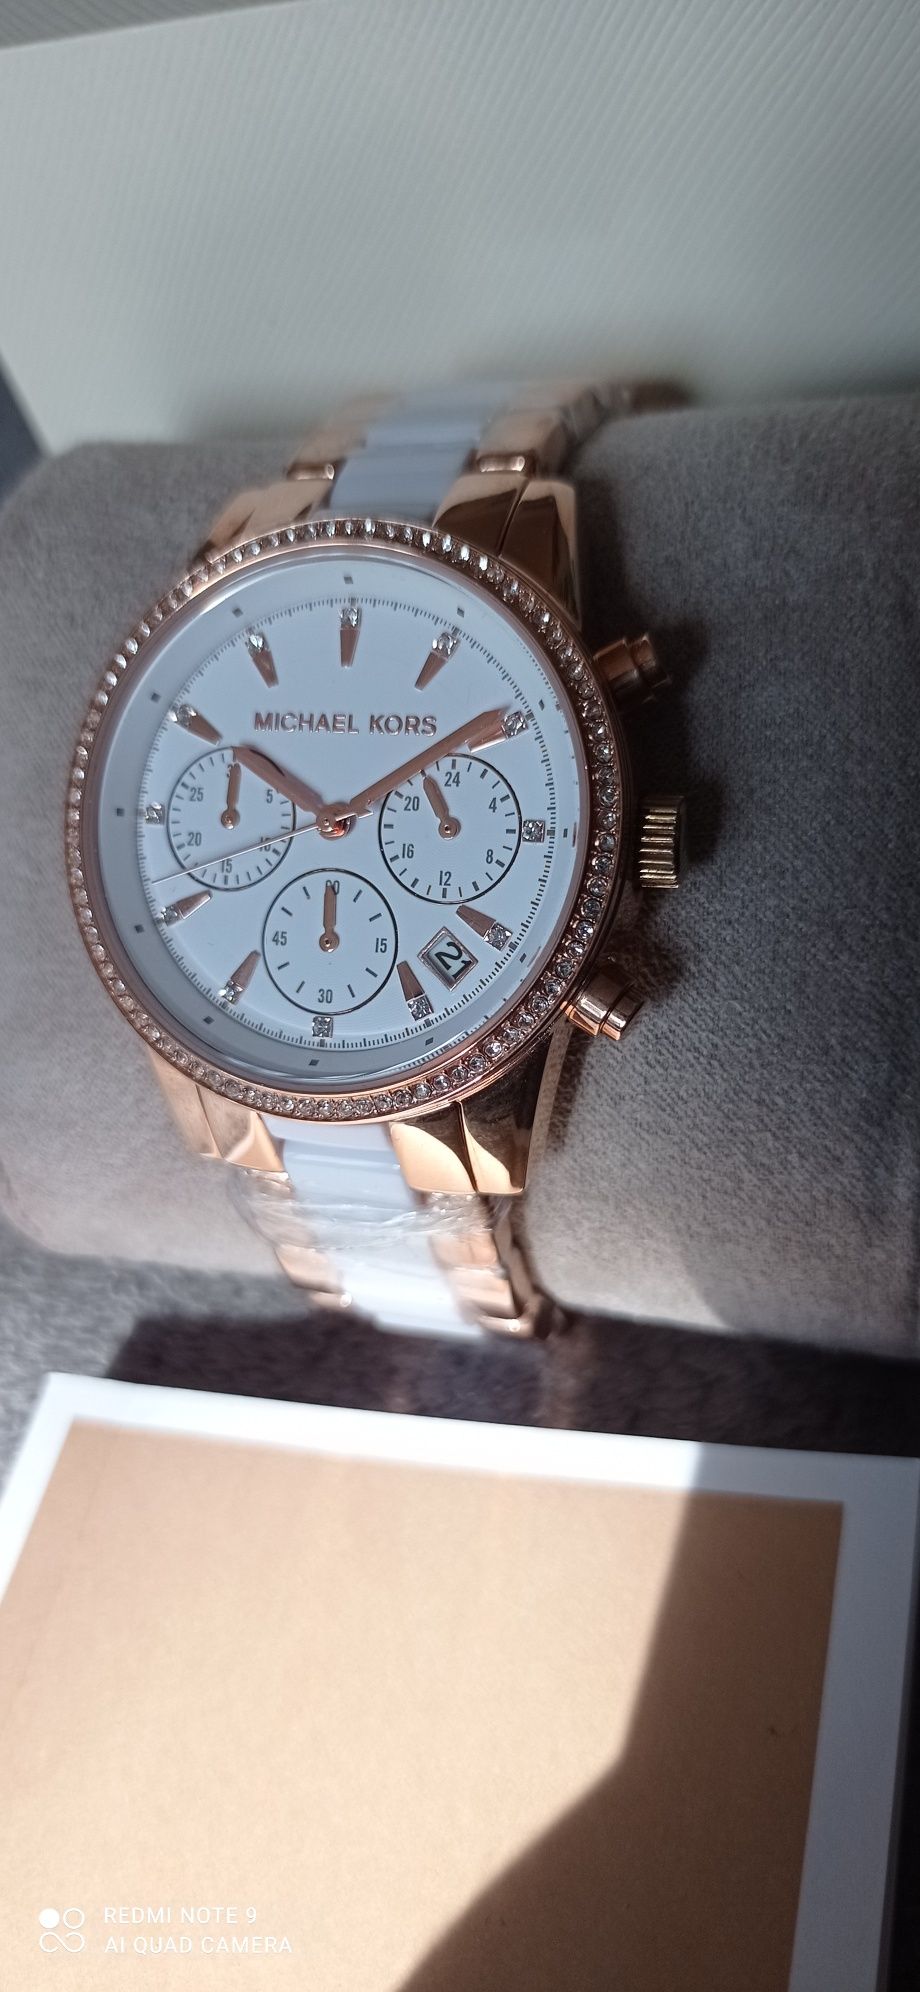 Oryginalny zegarek Michael Kors MK6324 wodoszczelny 50m